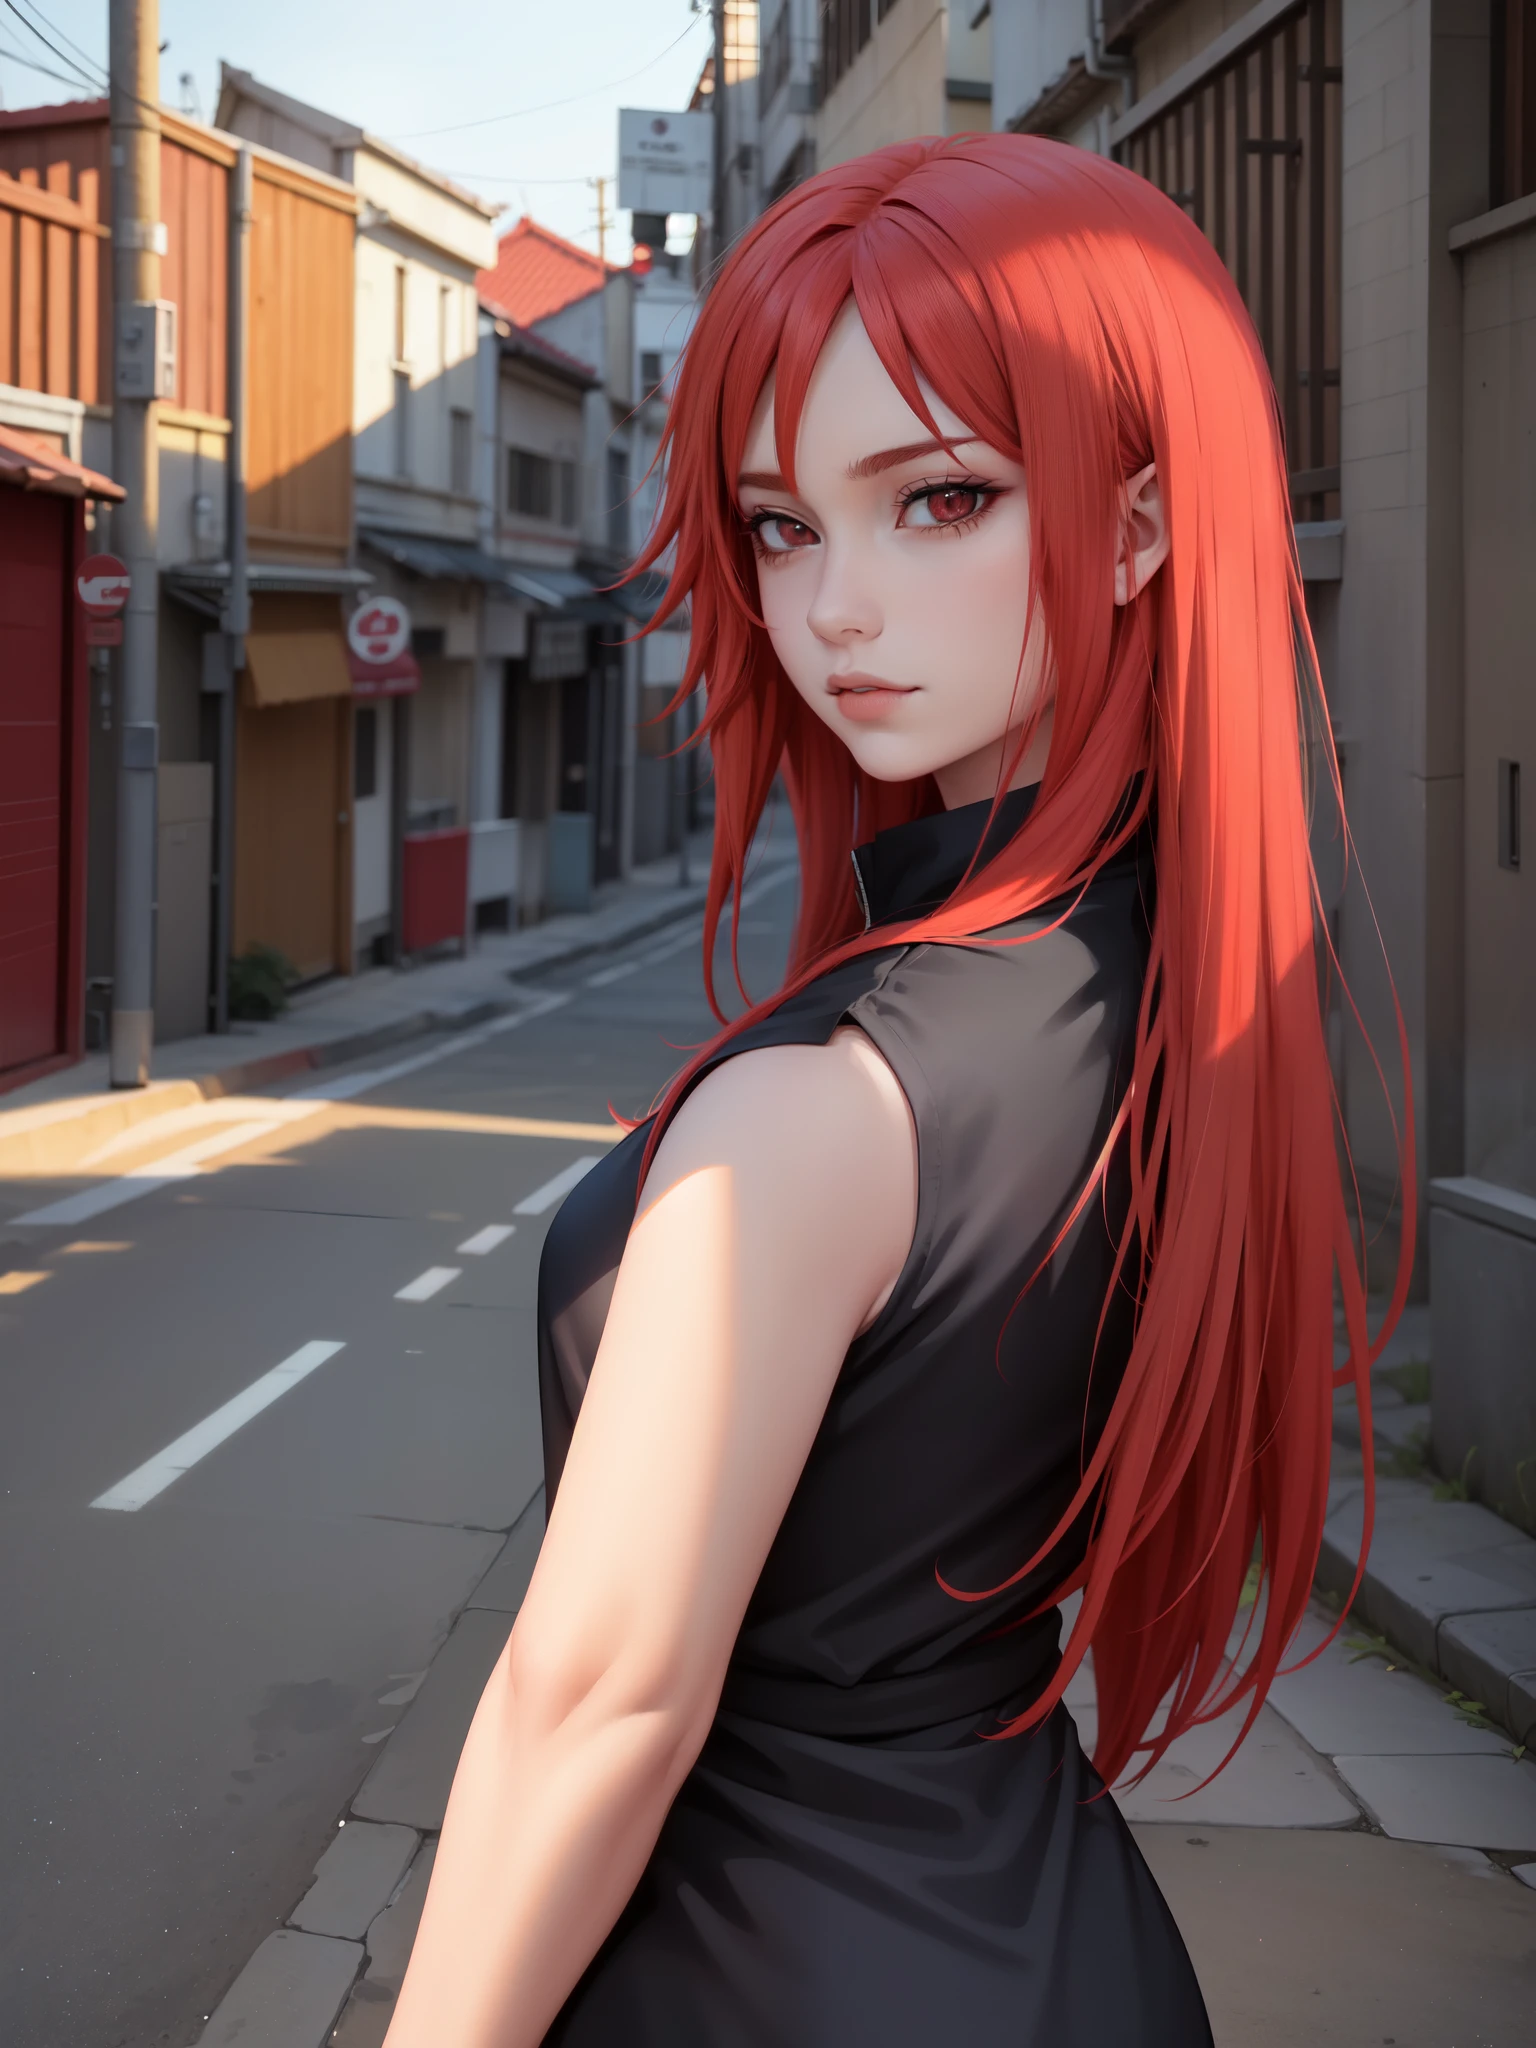 涡卷卡琳, 红头发的美丽迷人的女人, 出自动漫《火影忍者》, 具有最佳质量、最佳效果、最佳阴影、最佳灯光 